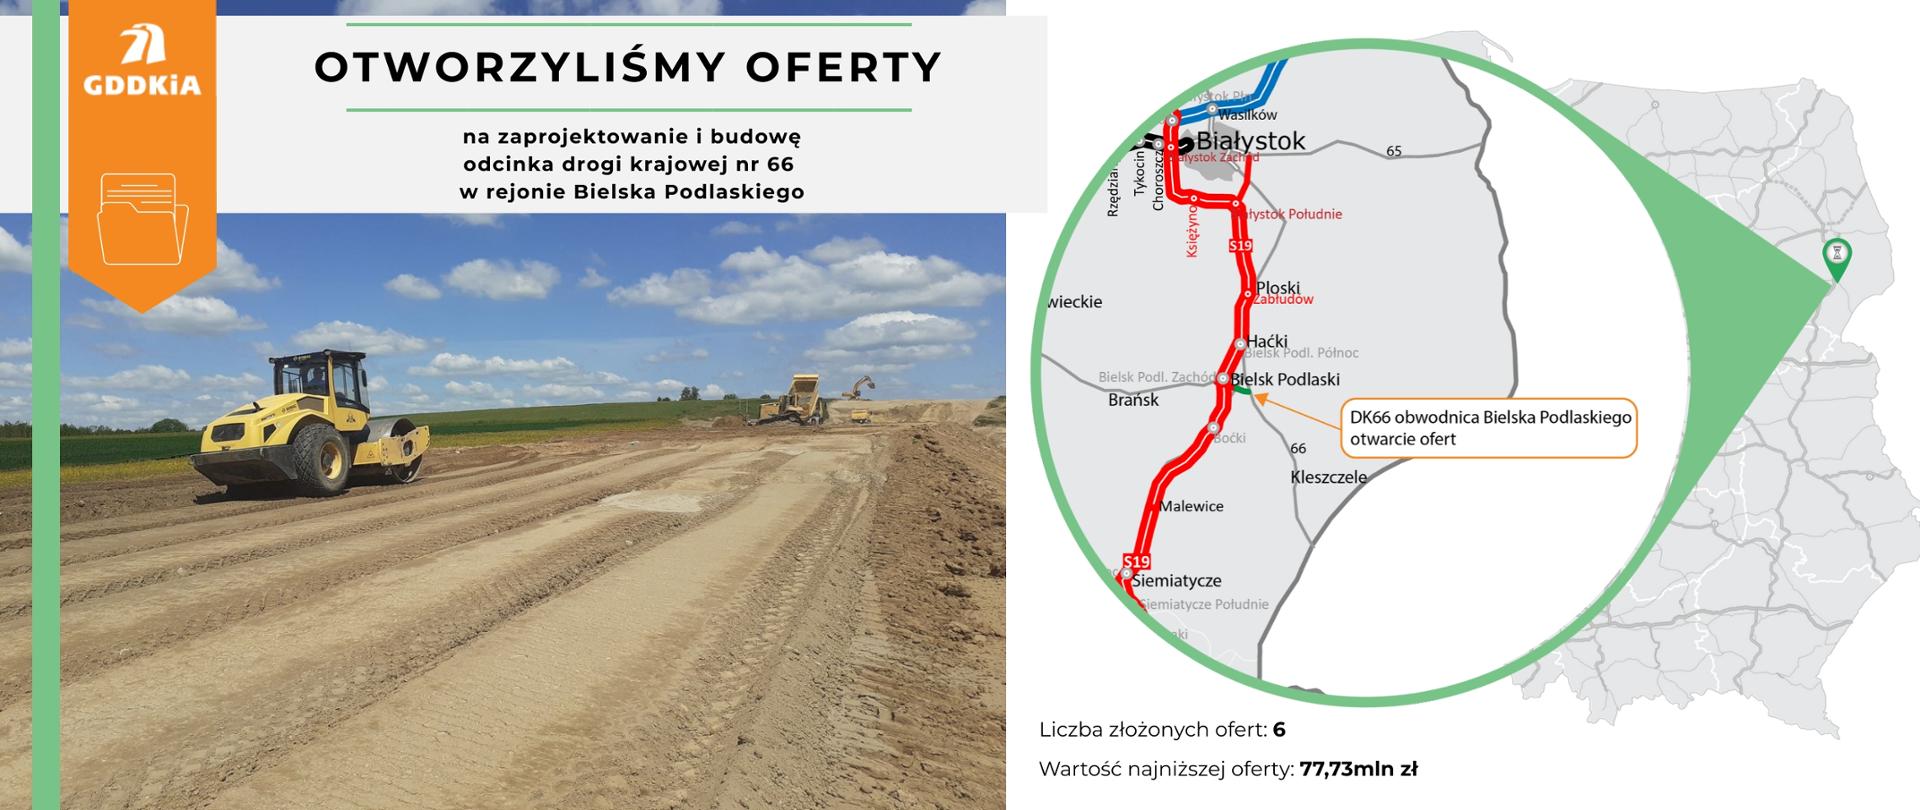 DK66 infografika na otwarcie ofert. Po prawej stronie mapa Polski z zaznaczonym odcinkiem DK66 w pobliżu Bielska Podlaskiego. Po lewej zdjęcie z pracującymi maszynami na budowie drogi. Widać walec, spychacz, ciężarówki i koparkę. 